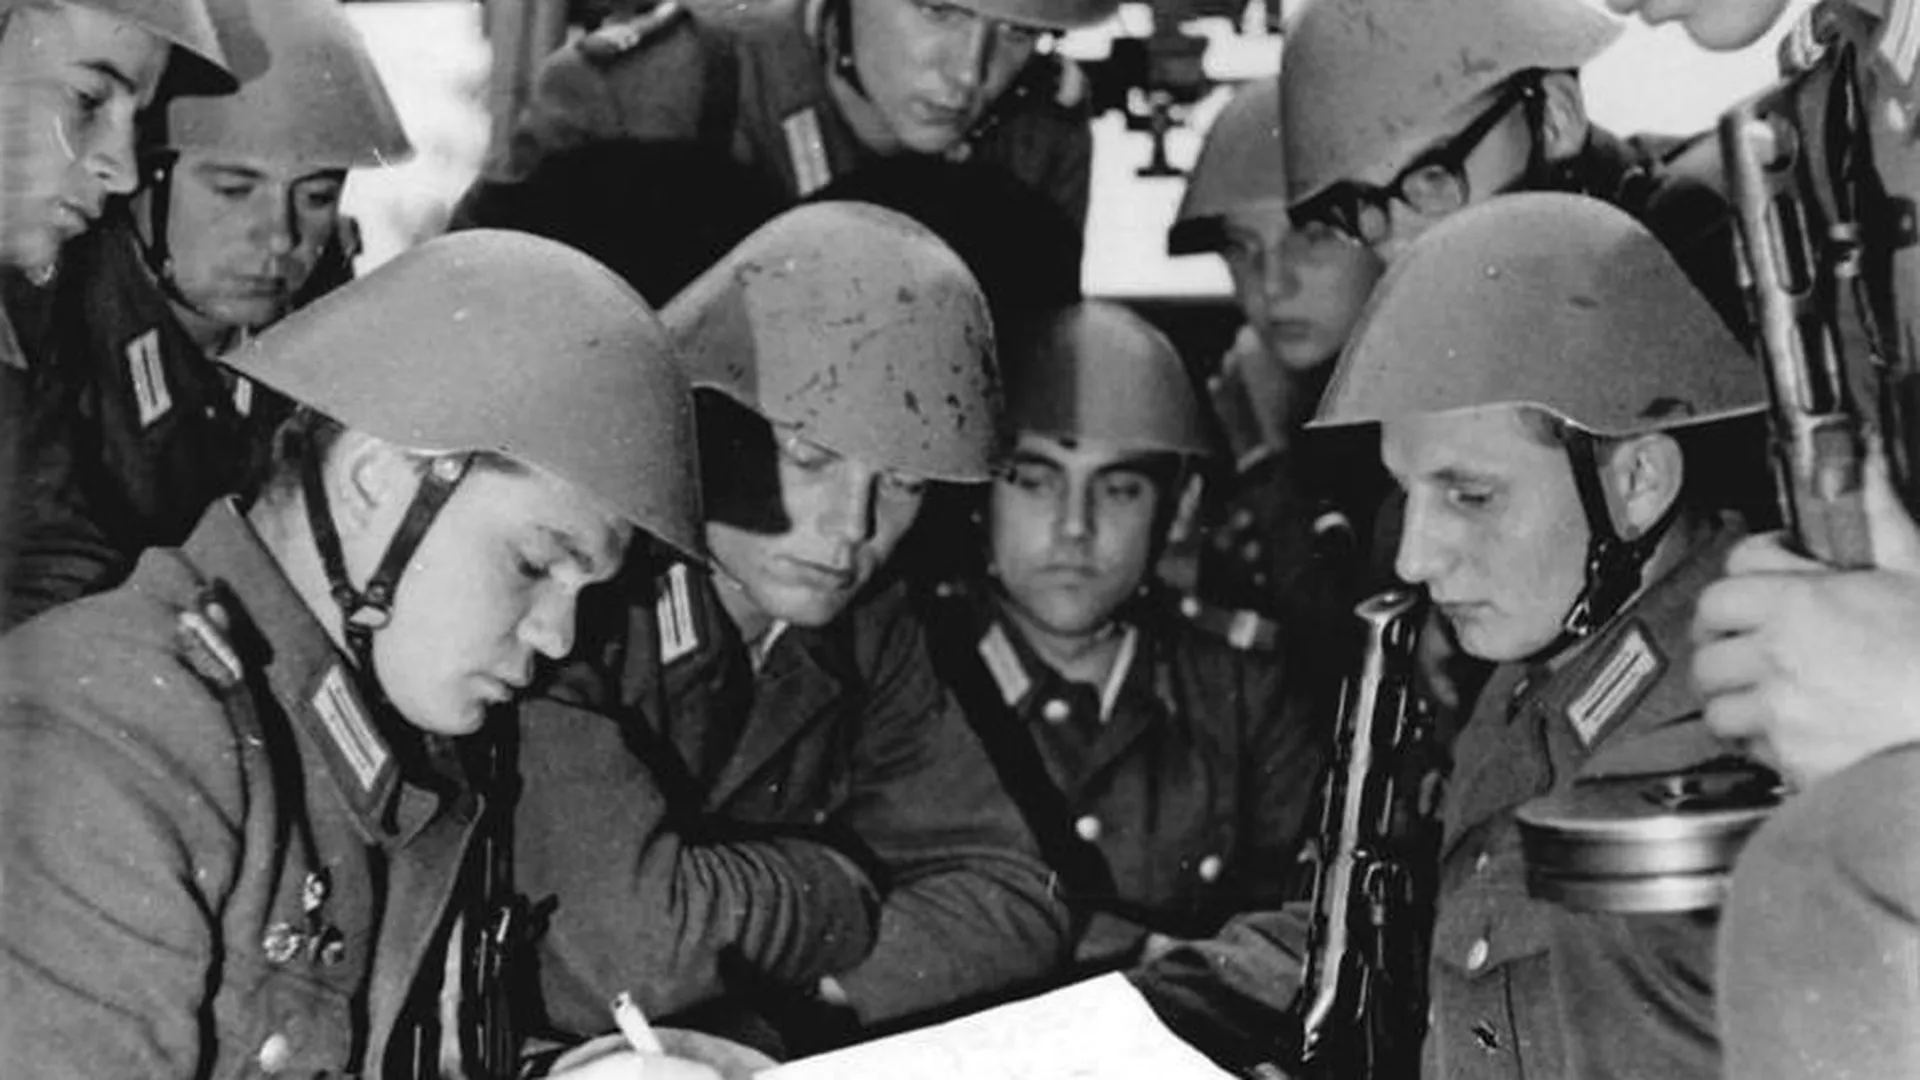 Солдаты армии ГДР. Военнослужащие, запечатленные на фото, относятся к частям, эквивалентным российским «внутренним войскам». Перед дежурством у Берлинской стены, 1961 год